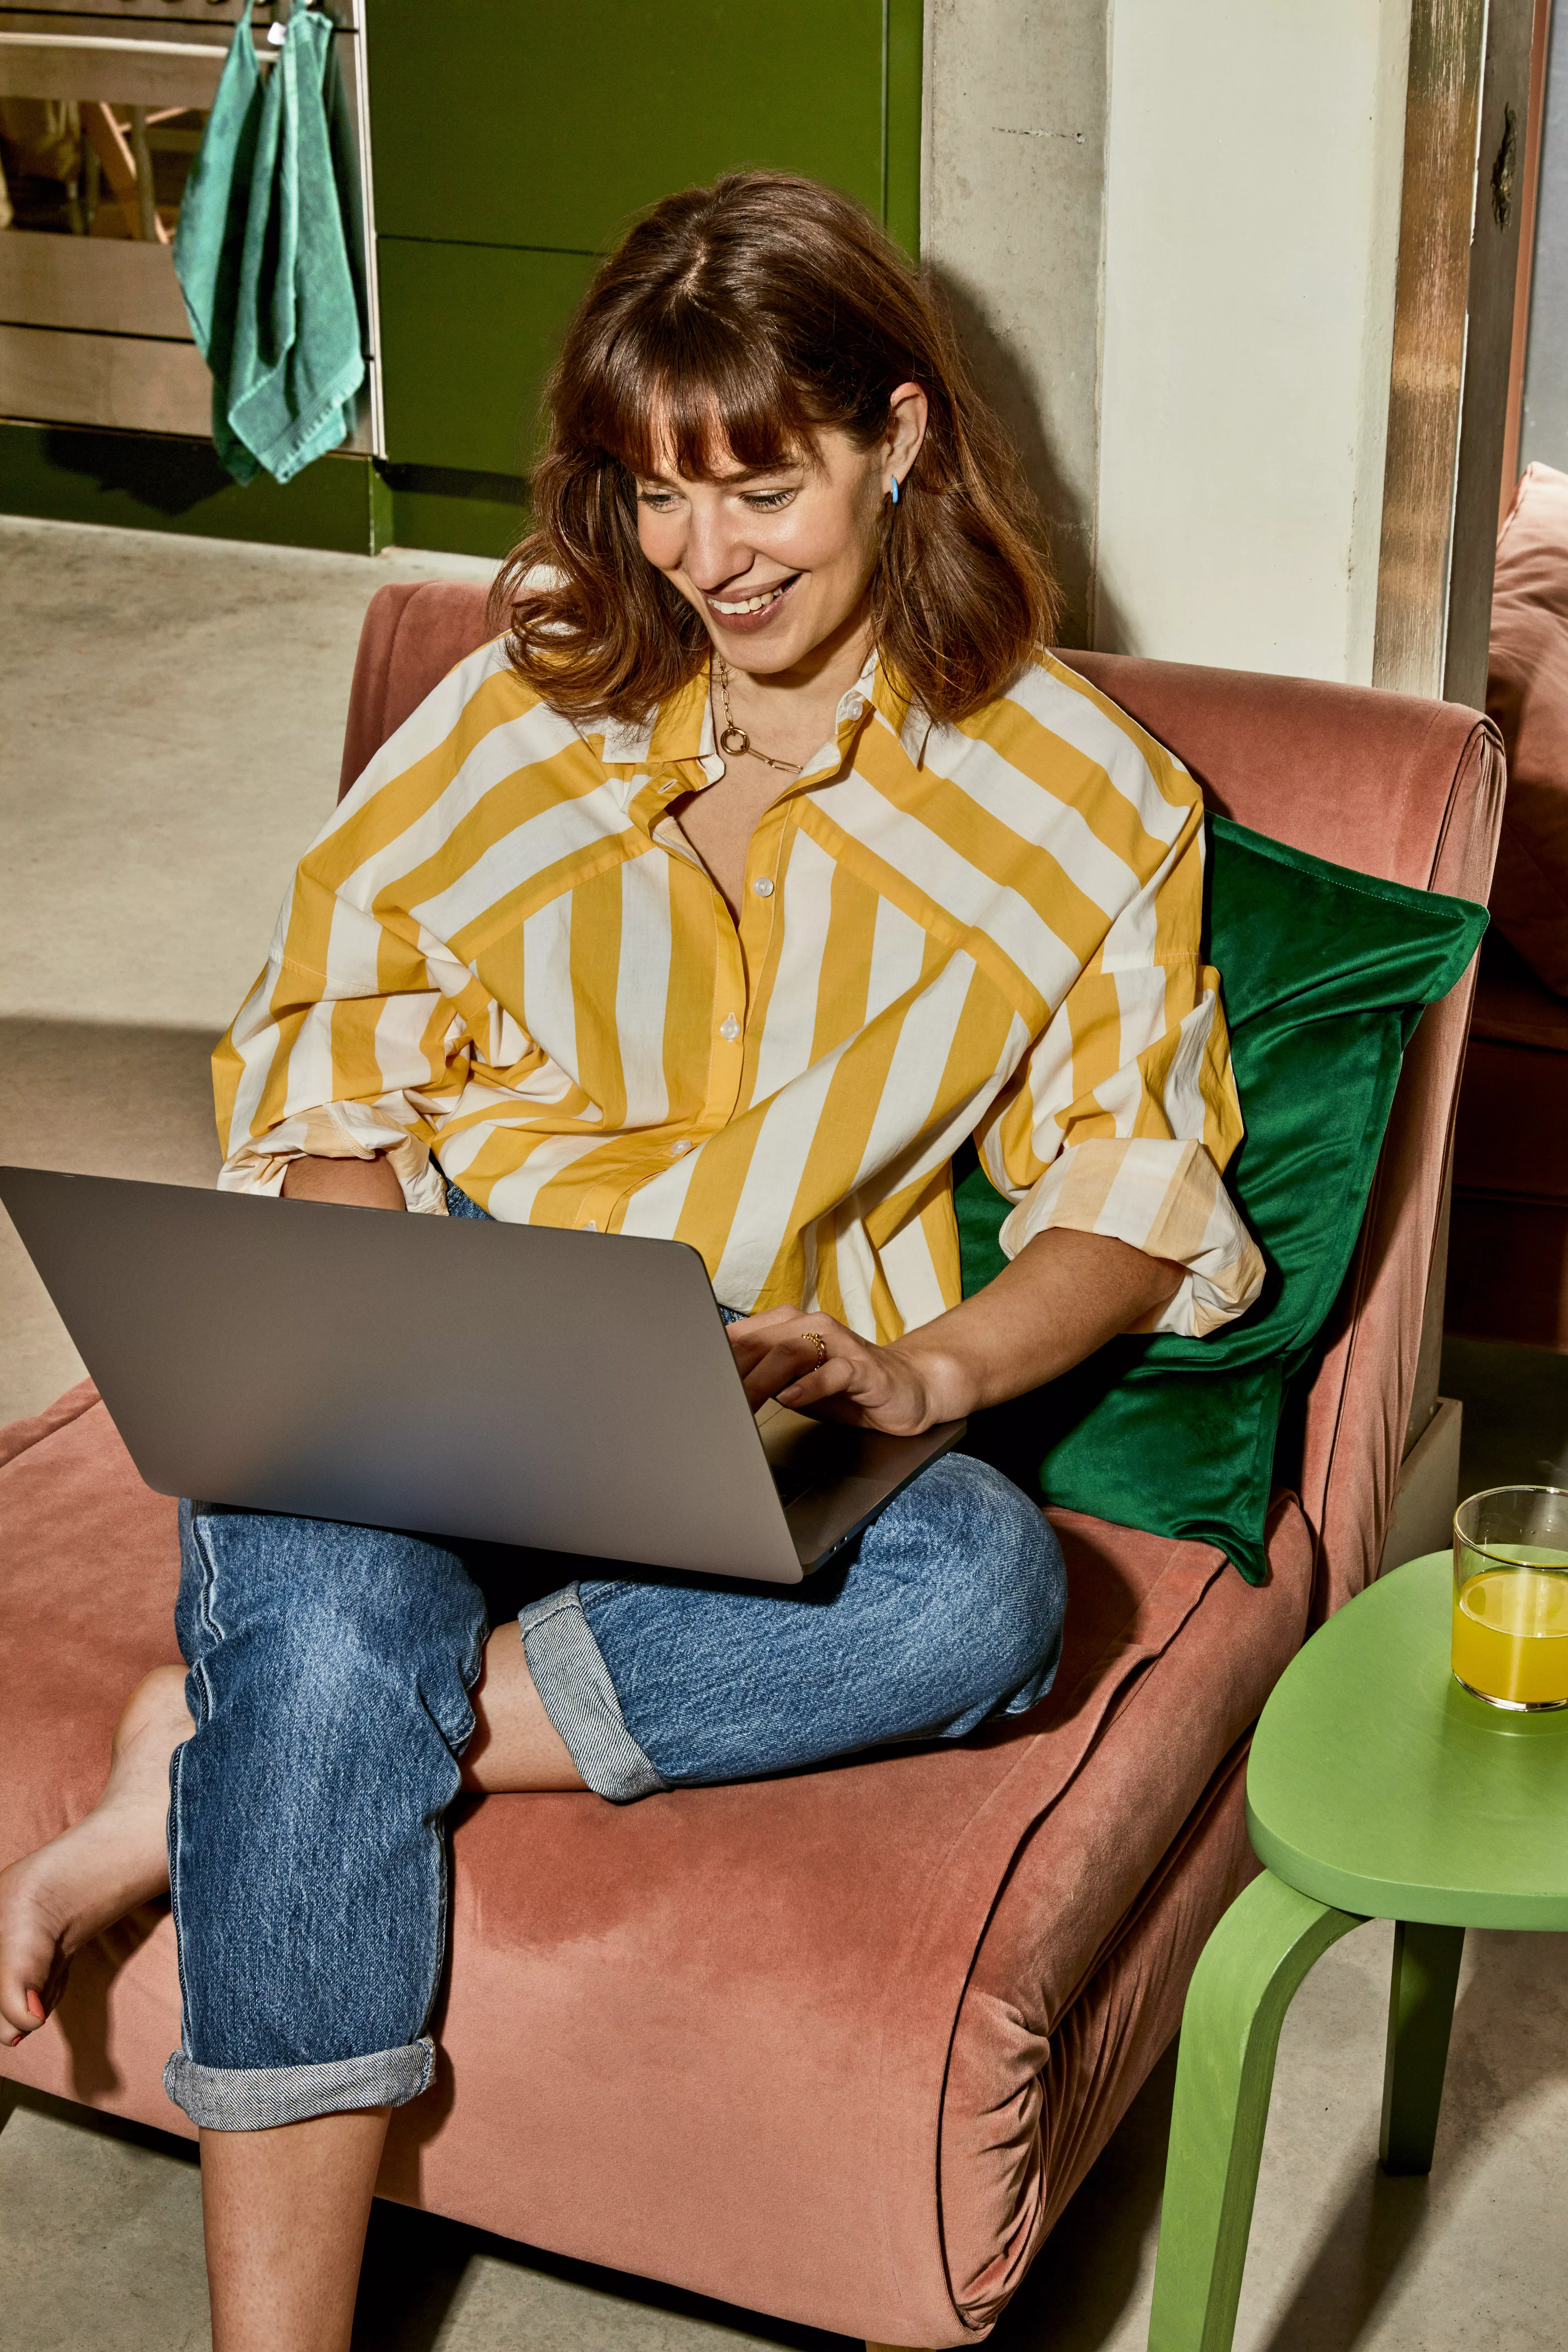 Vrouw zit op een roze stoel met een laptop op schoot